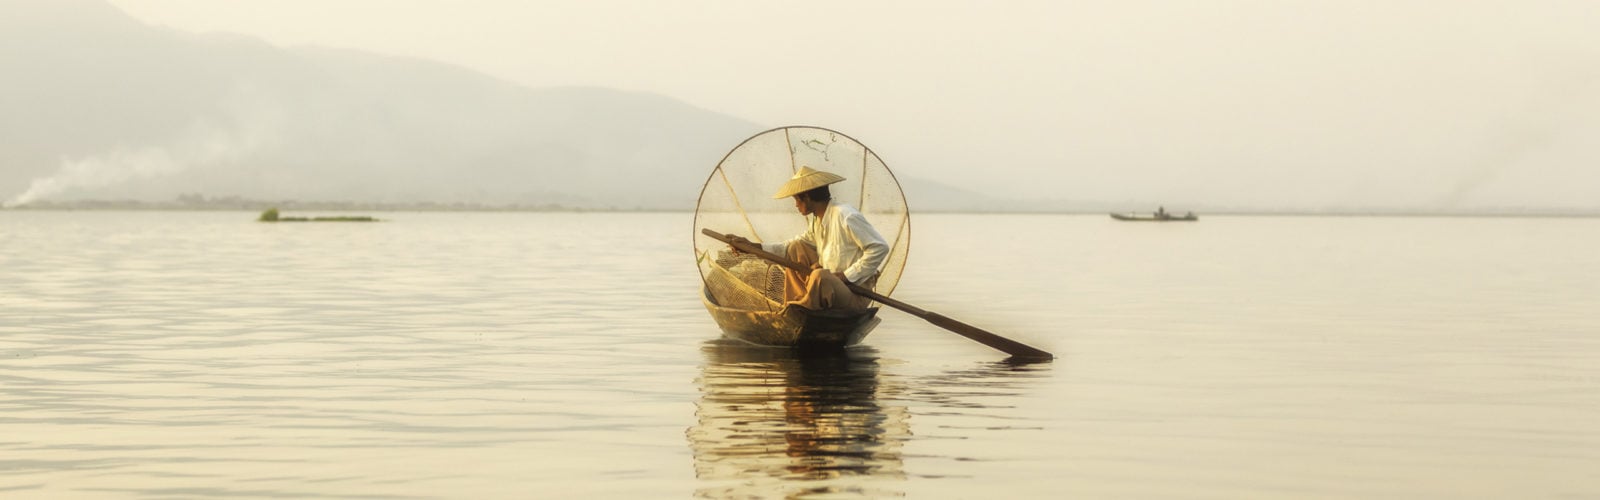 inle-lake-fisherman